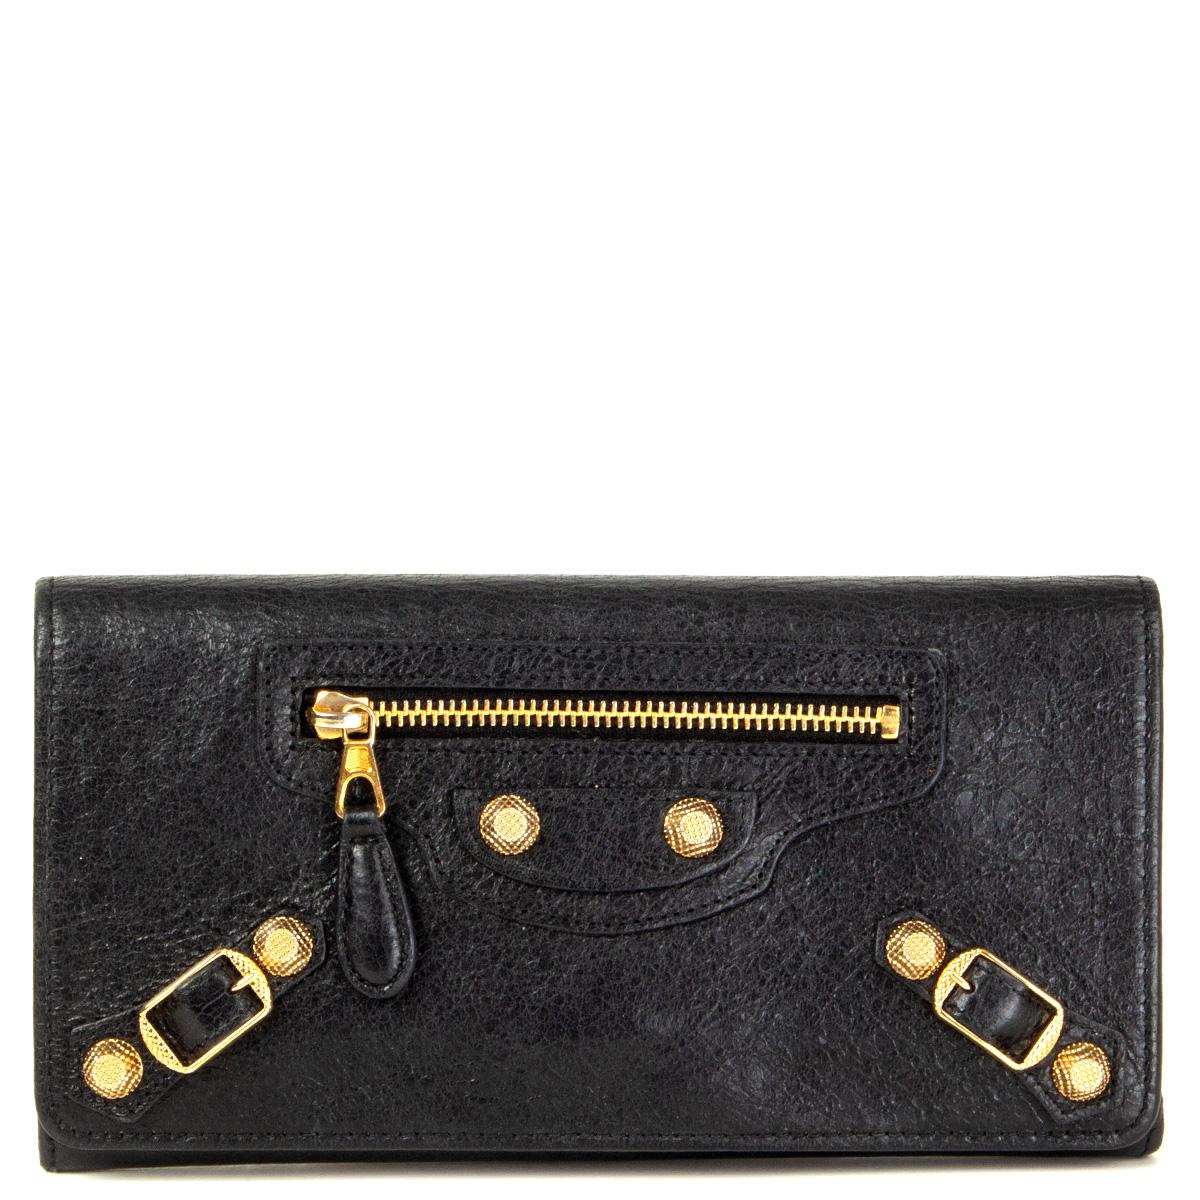 100% authentische Balenciaga 'Giant Money' Kontinental Brieftasche aus schwarzem Leder mit goldfarbener Hardware. Wird mit einem Magnetknopf unter der Klappe geöffnet. Gefüttert mit schwarzem Leder und Nylon. Aufgeteilt in drei Fächer mit einem